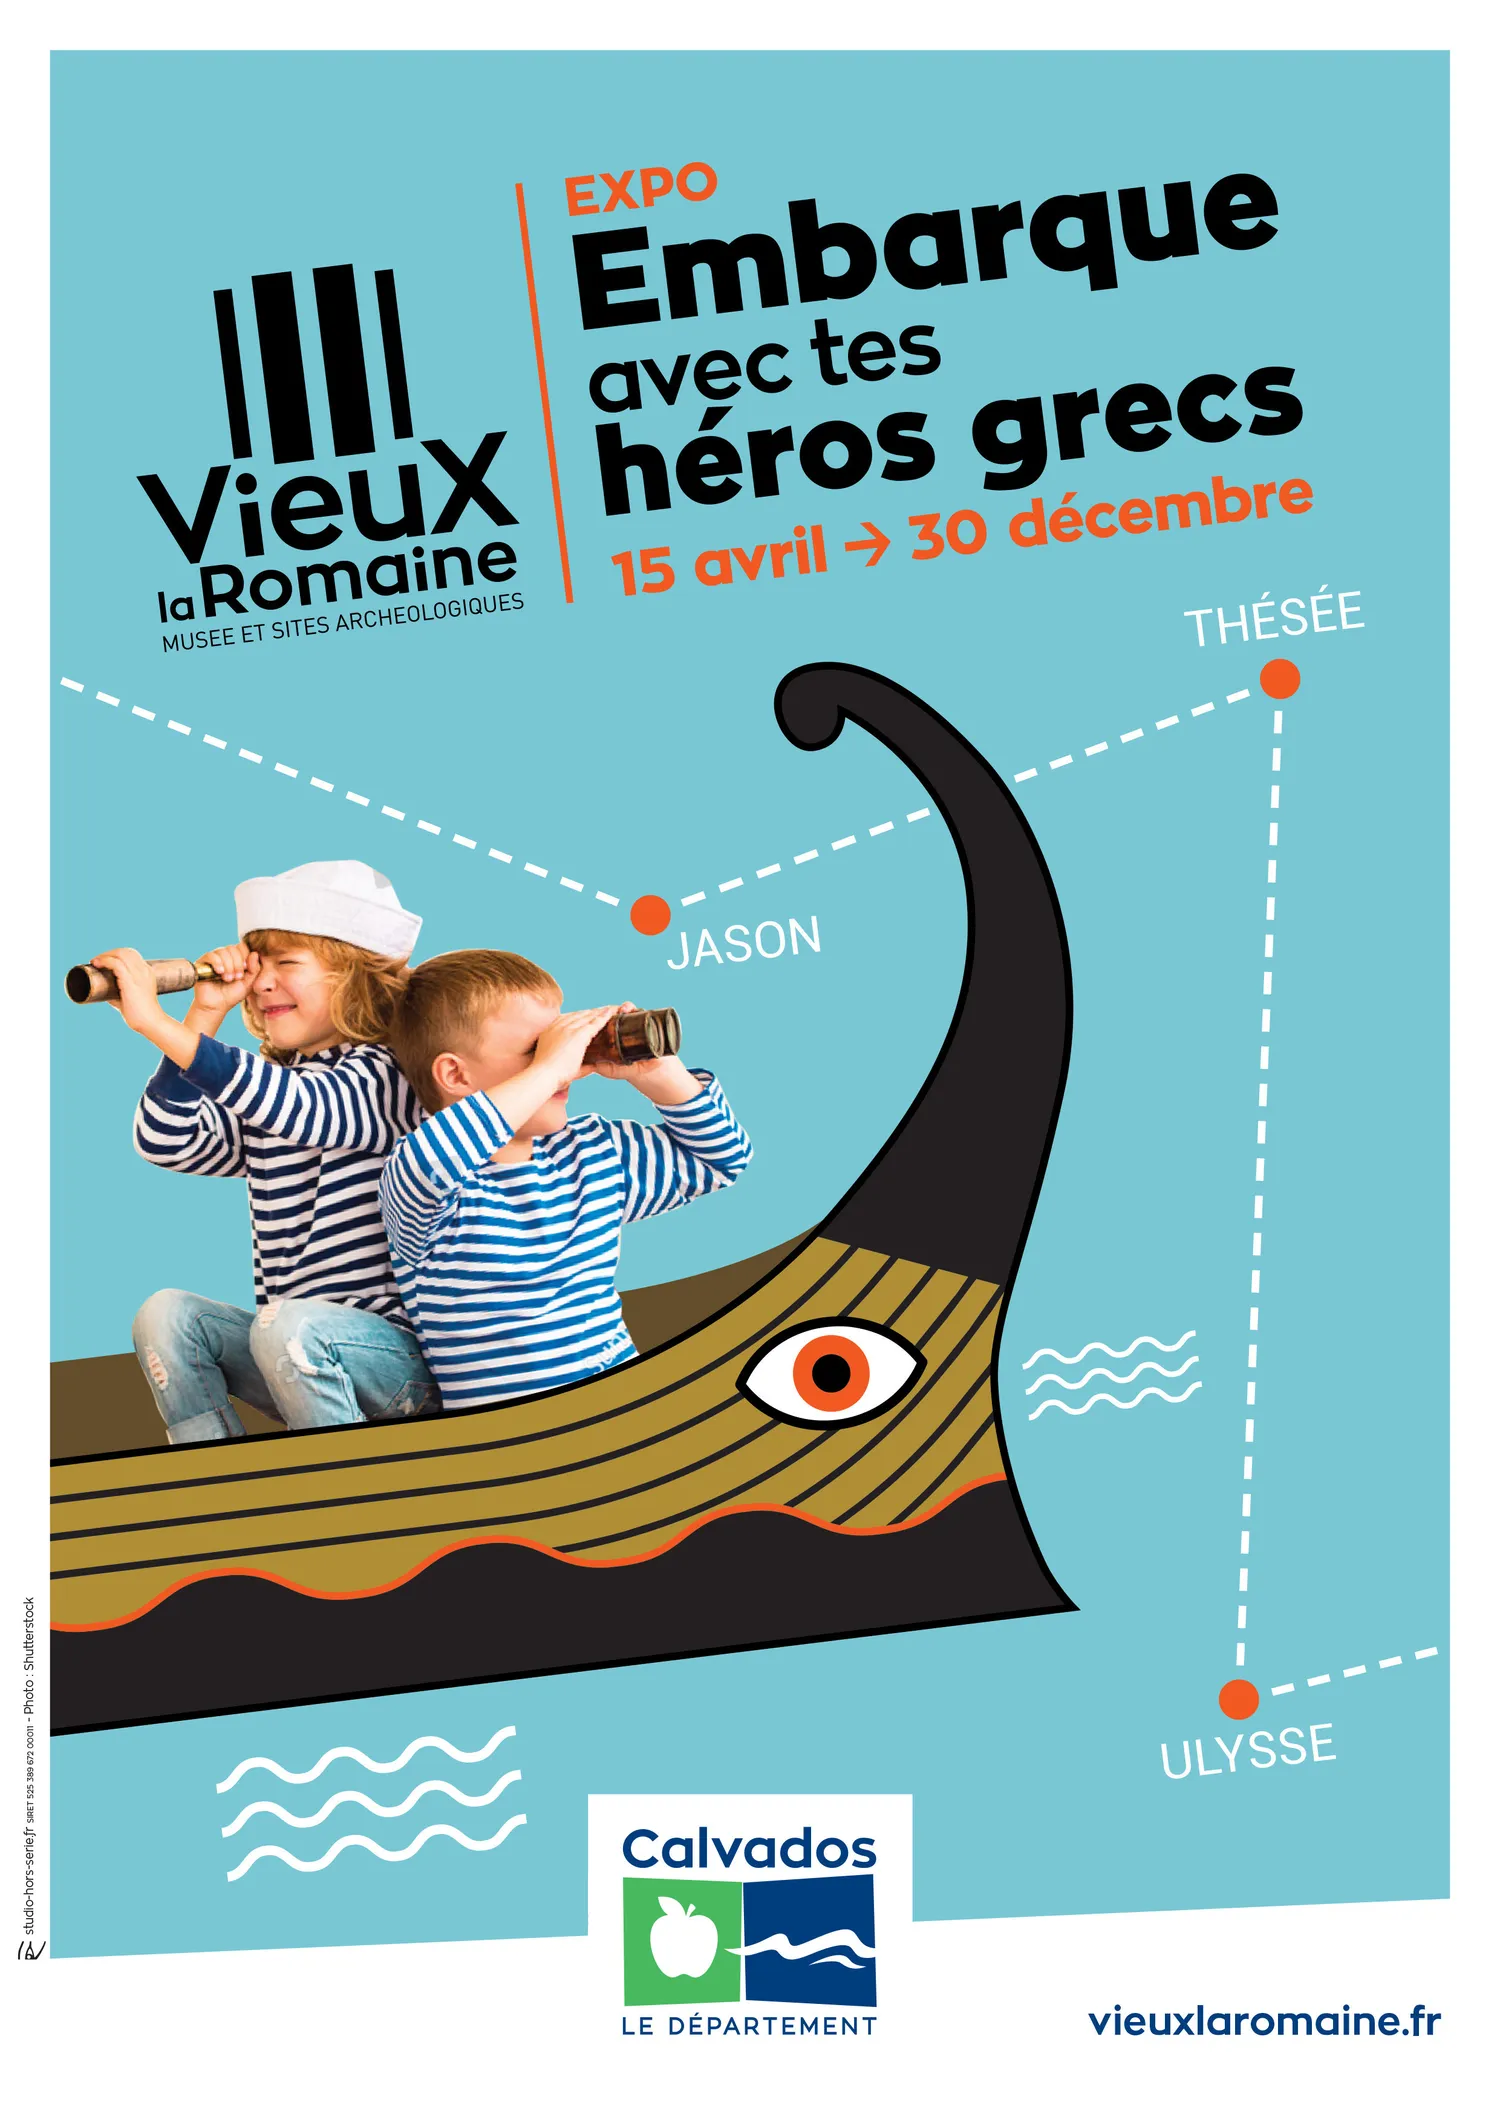 Image qui illustre: Exposition : embarque avec tes héros grecs à Vieux - 0